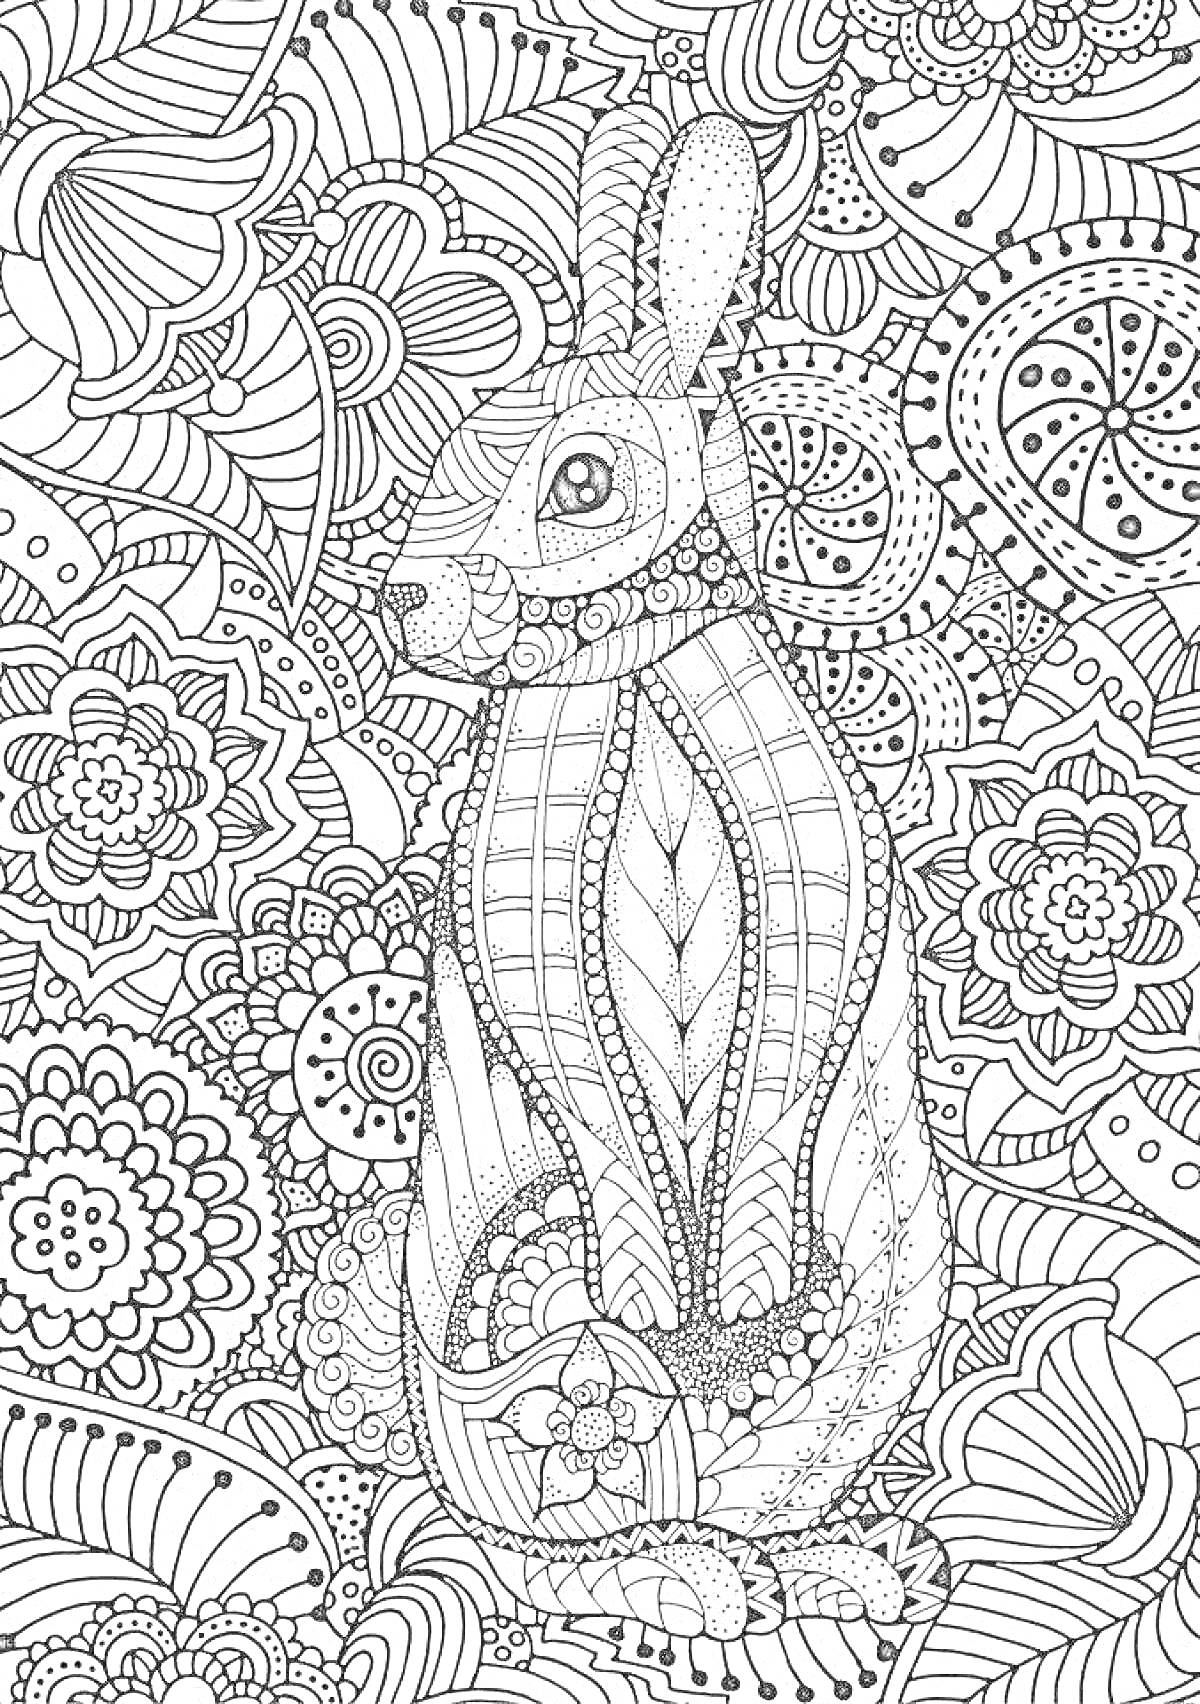 Кролик среди узоров и цветков